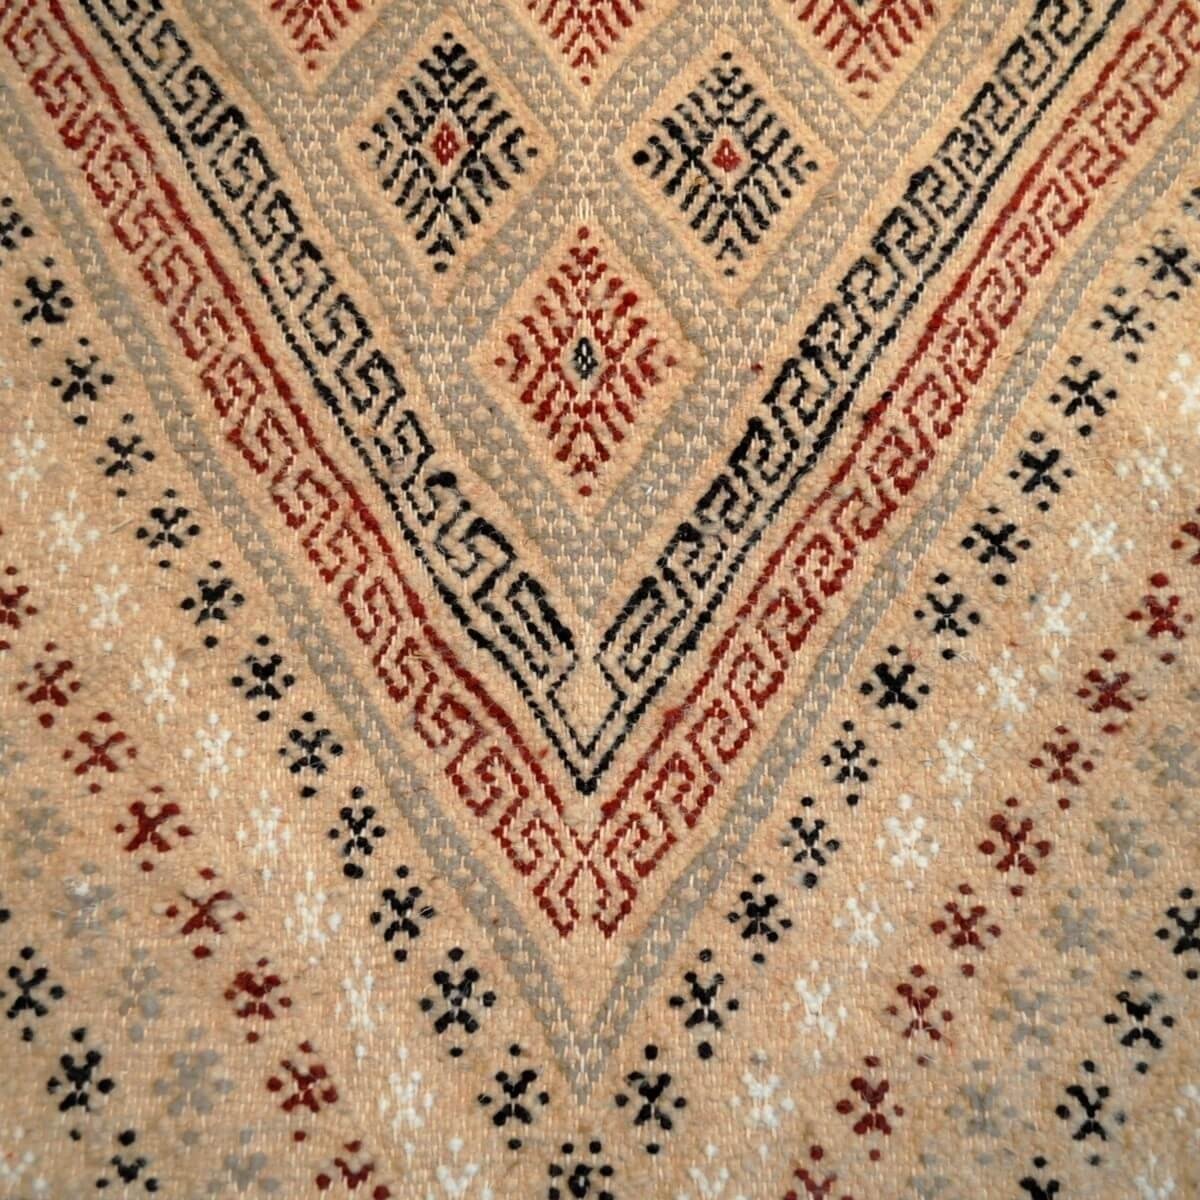 Berber tapijt Tapijt Margoum Teskreya 112x206 Beige (Handgeweven, Wol, Tunesië) Tunesisch Margoum Tapijt uit de stad Kairouan. R